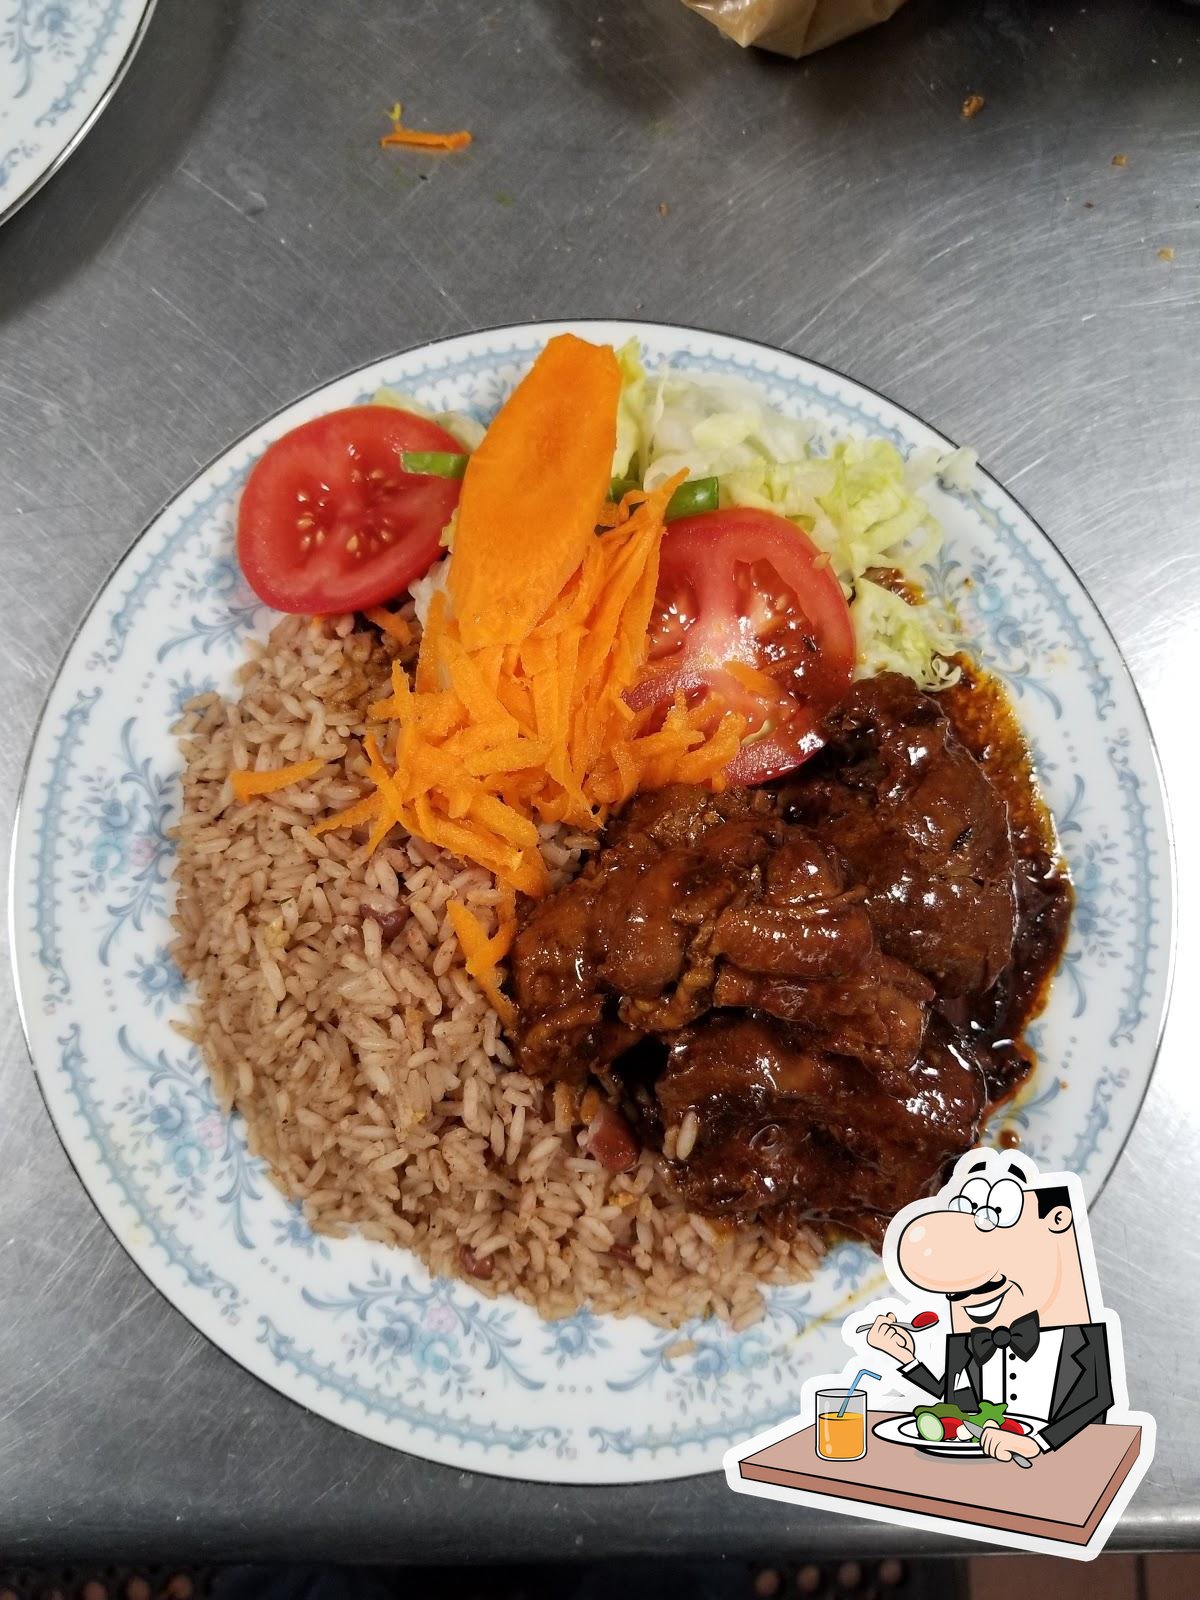 https://img.restaurantguru.com/r86b-Jamaican-Dutch-Pot-meals-2021-09.jpg